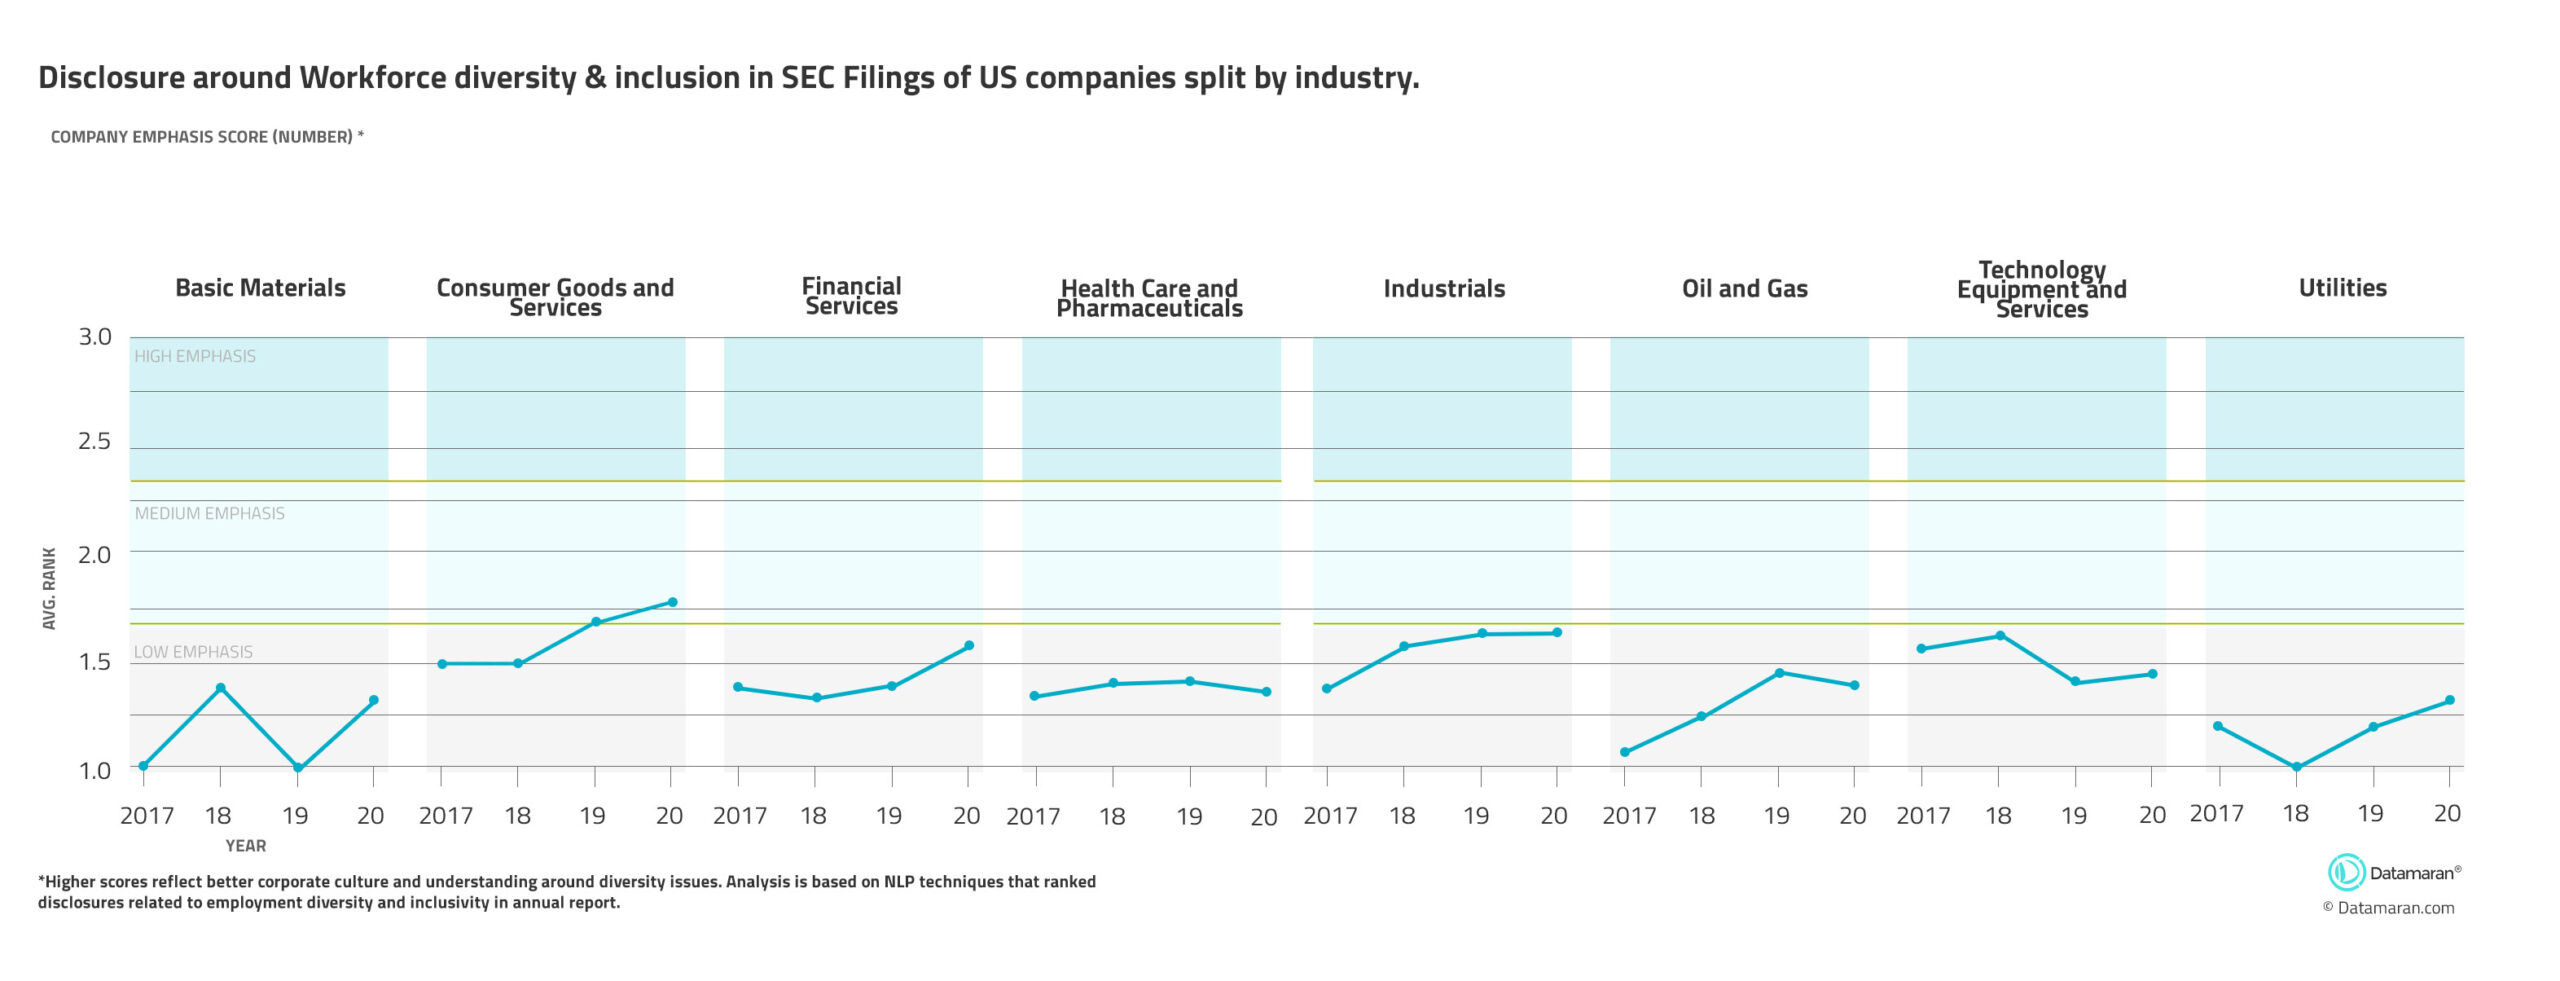 图表显示了按行业分列的美国公司在美国证券交易委员会(SEC)备案文件中披露的劳动力多样性和纳入情况